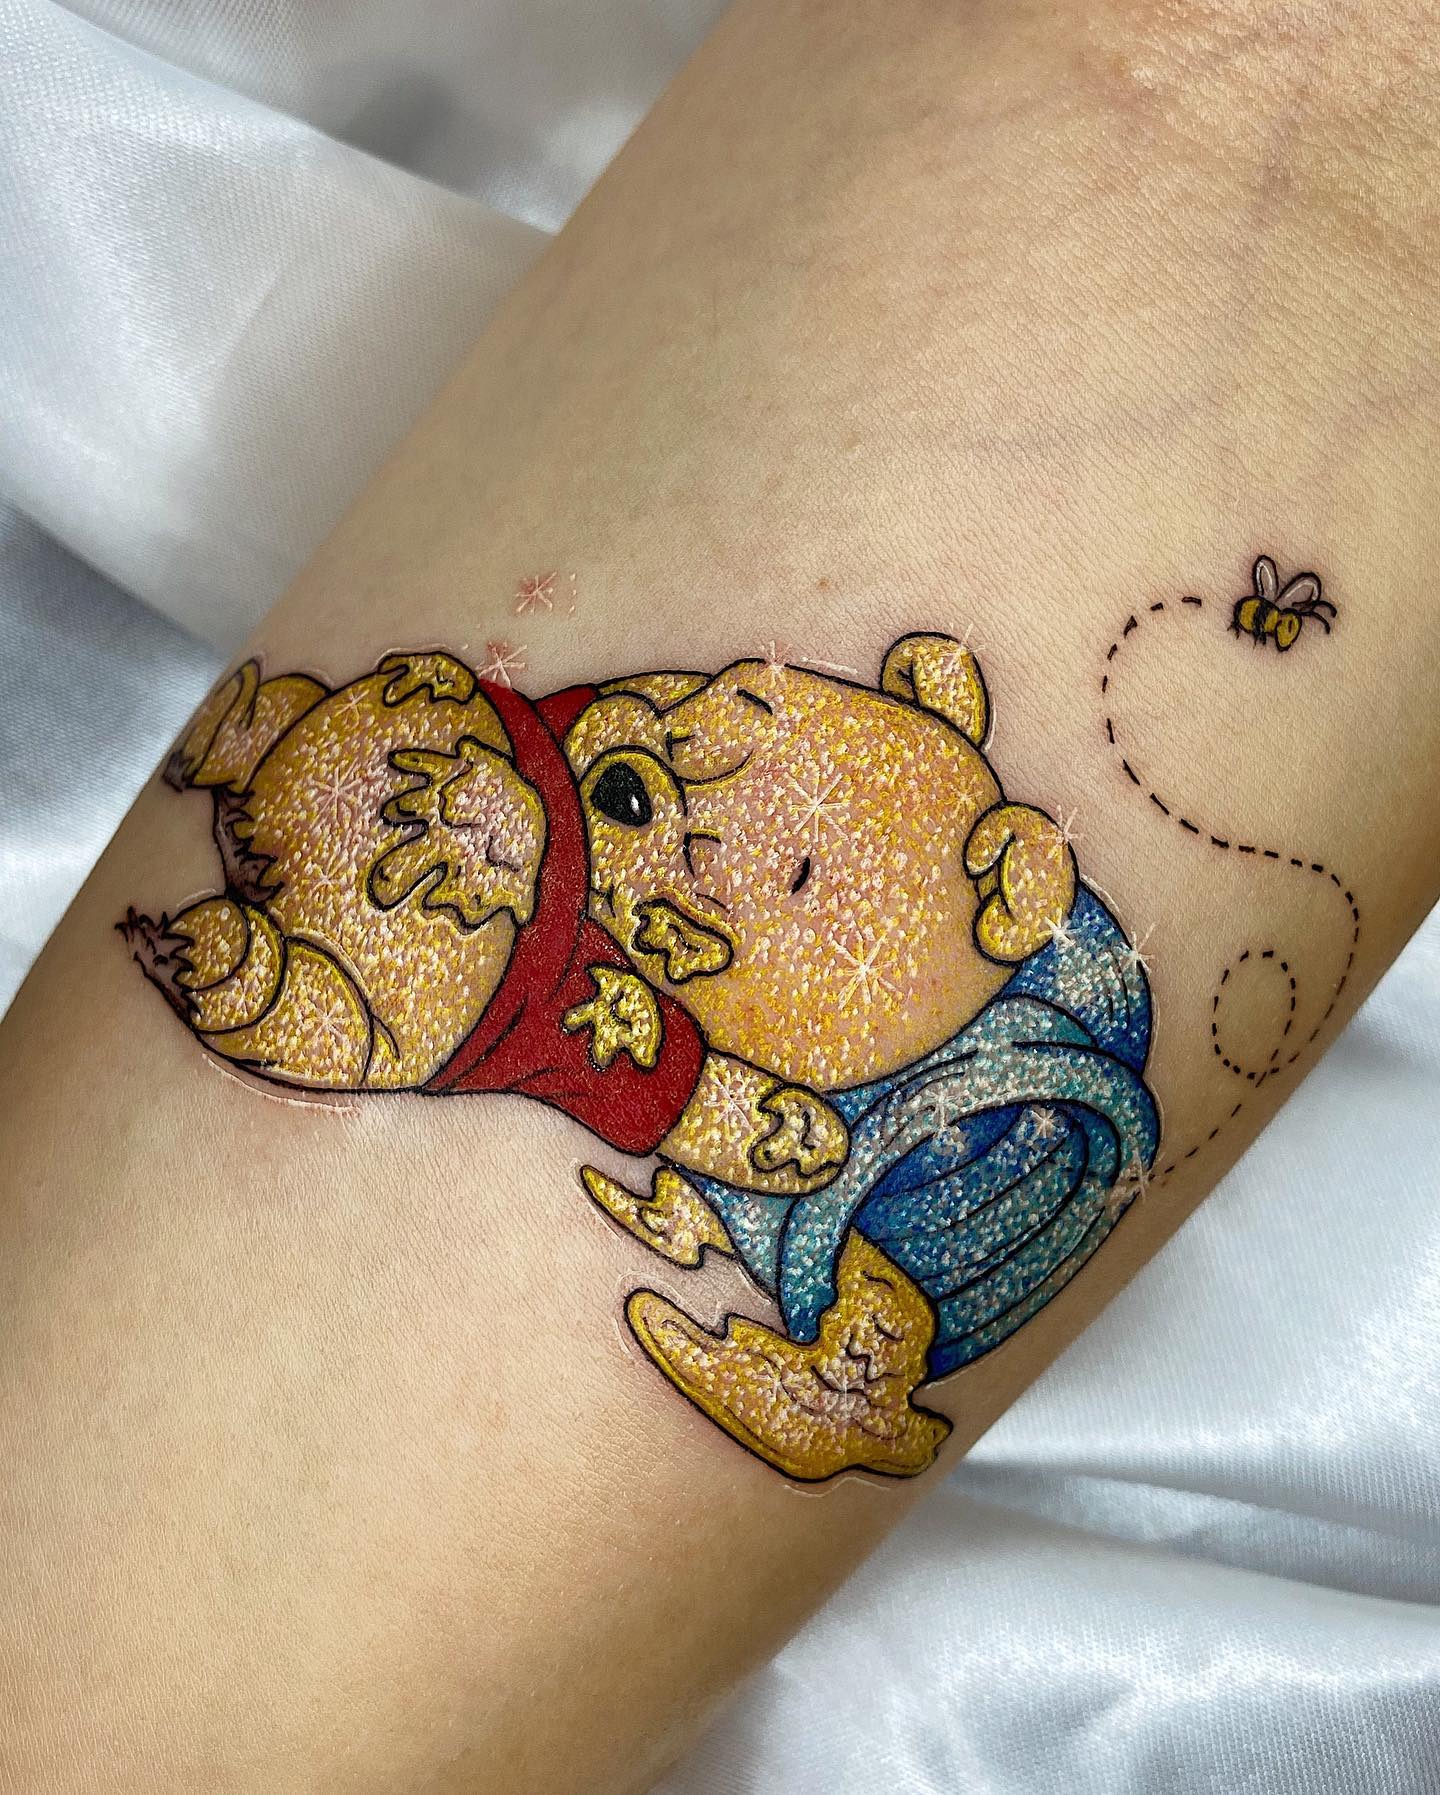 Tatuaje de Winnie The Pooh con purpurina